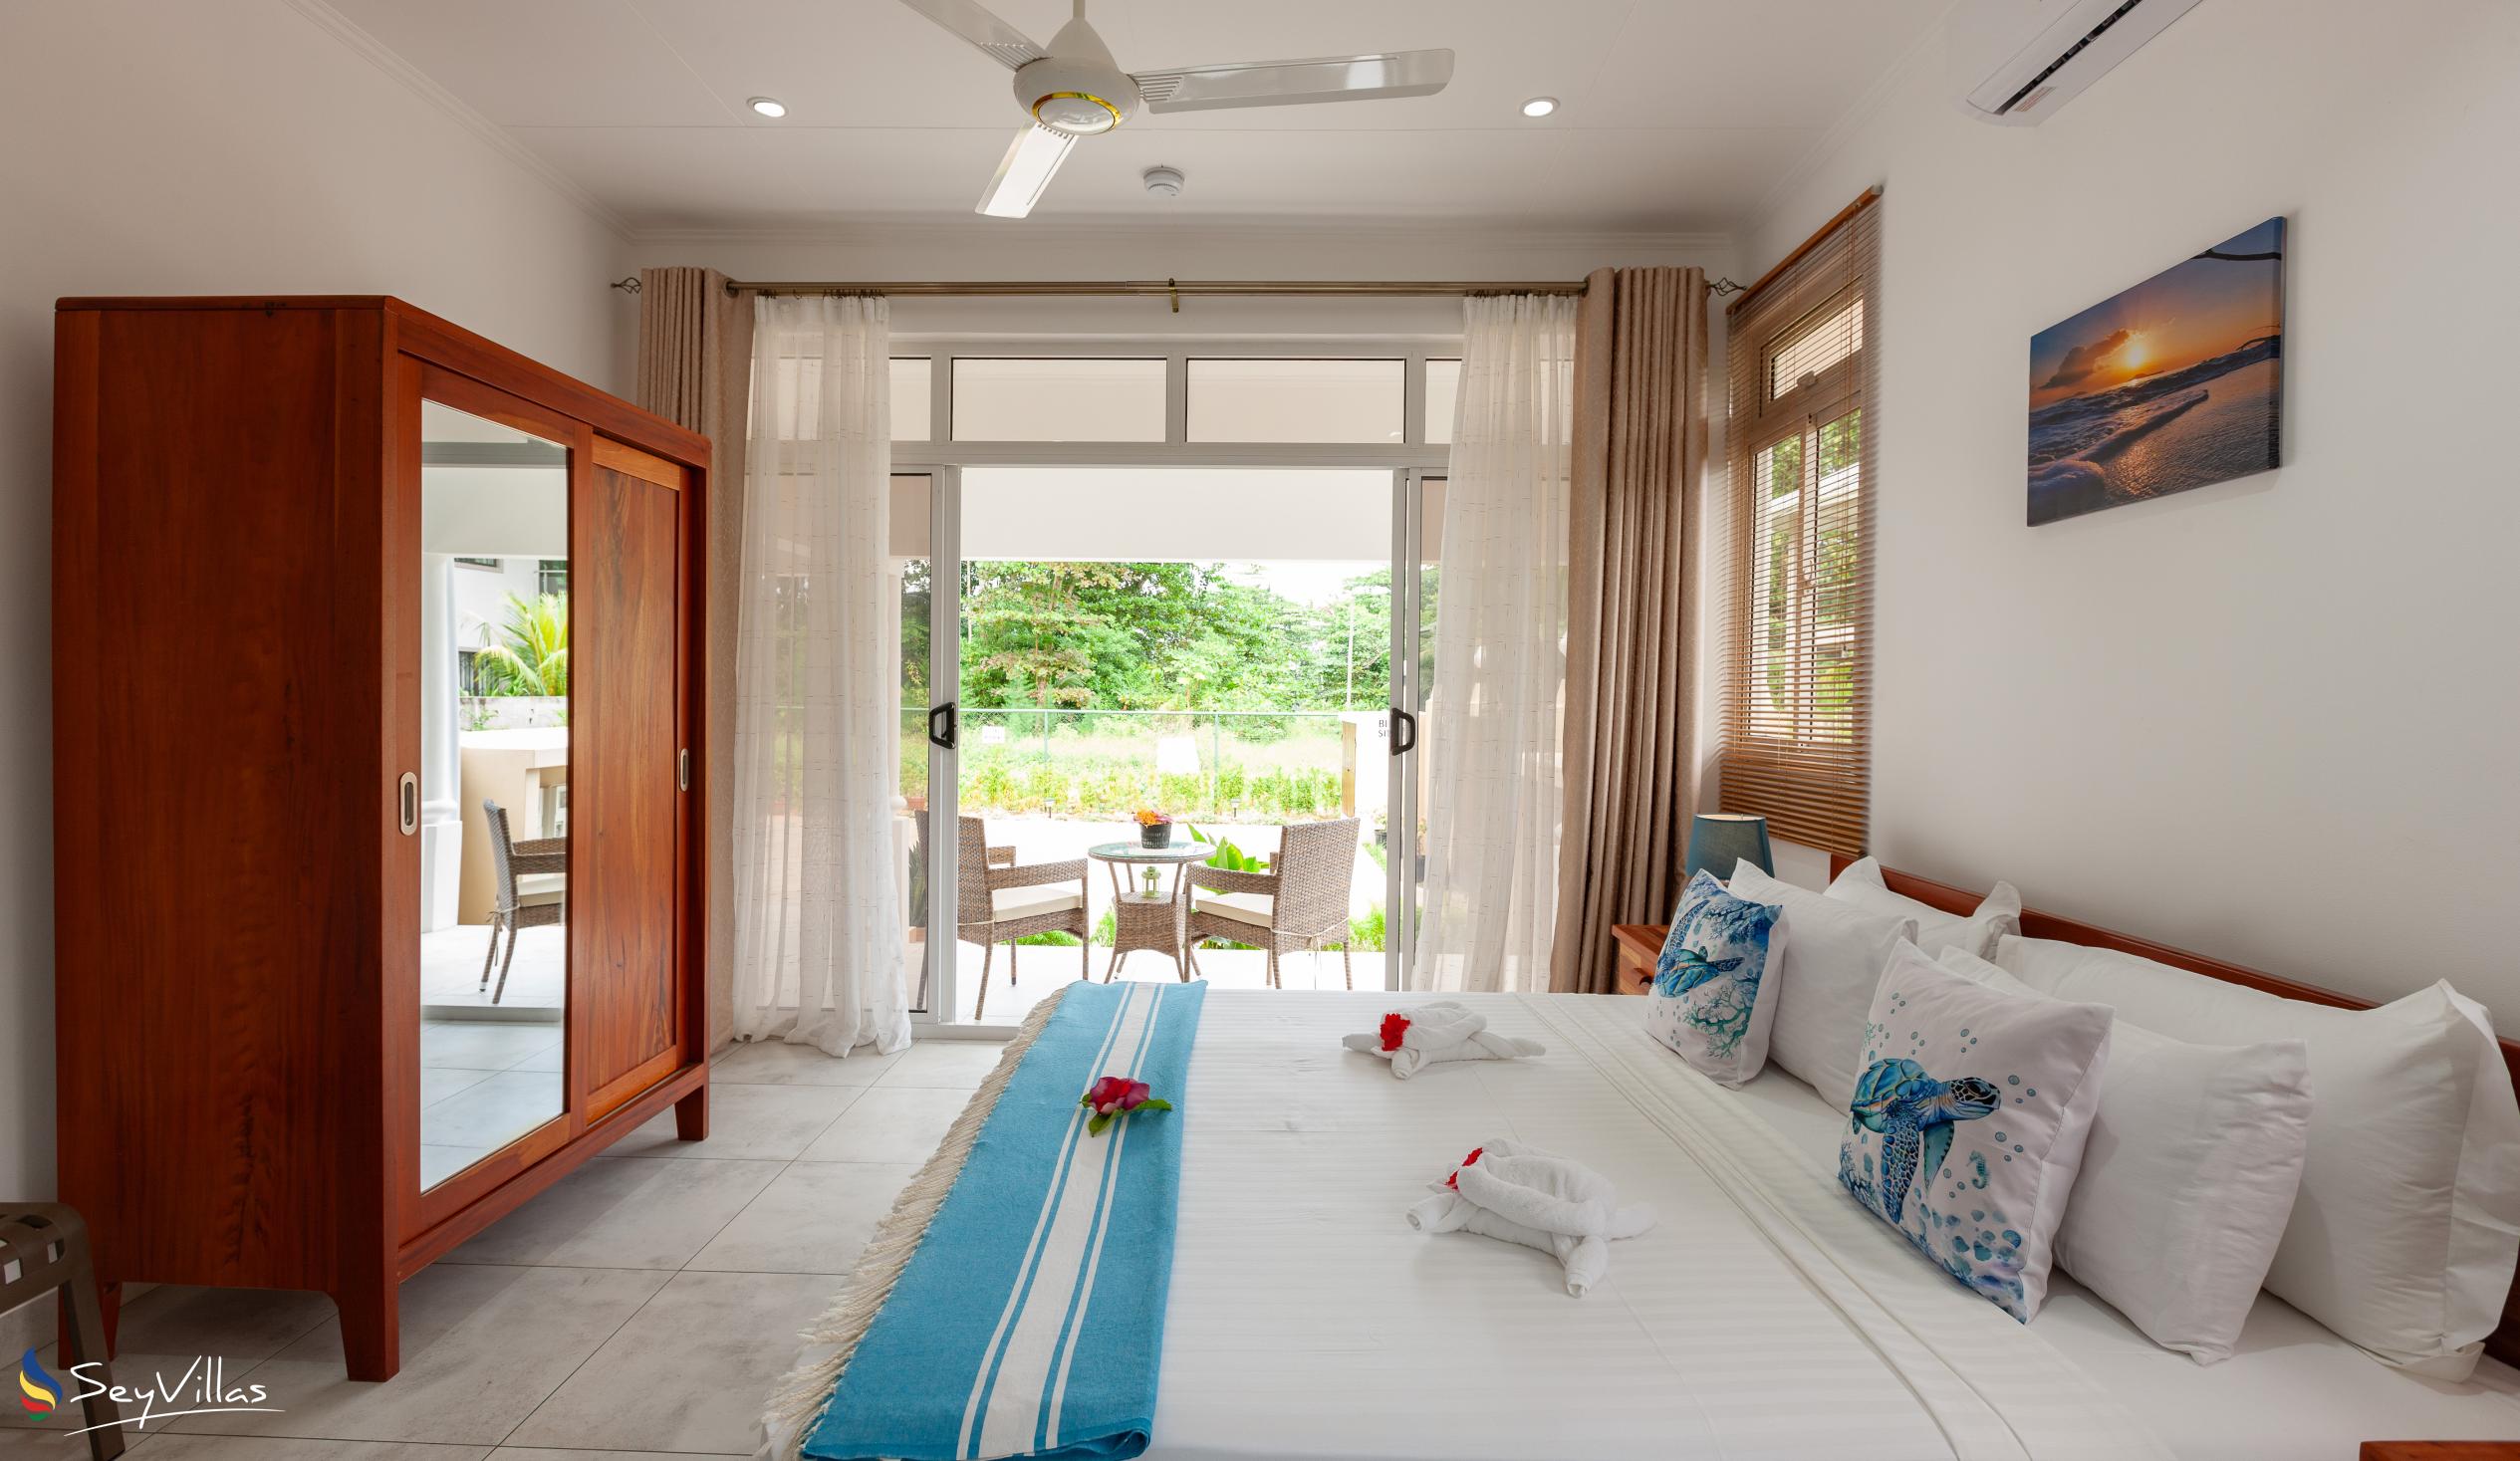 Foto 38: MacMillan's Holiday Villas - Chalet mit 2 Schlafzimmern - Praslin (Seychellen)